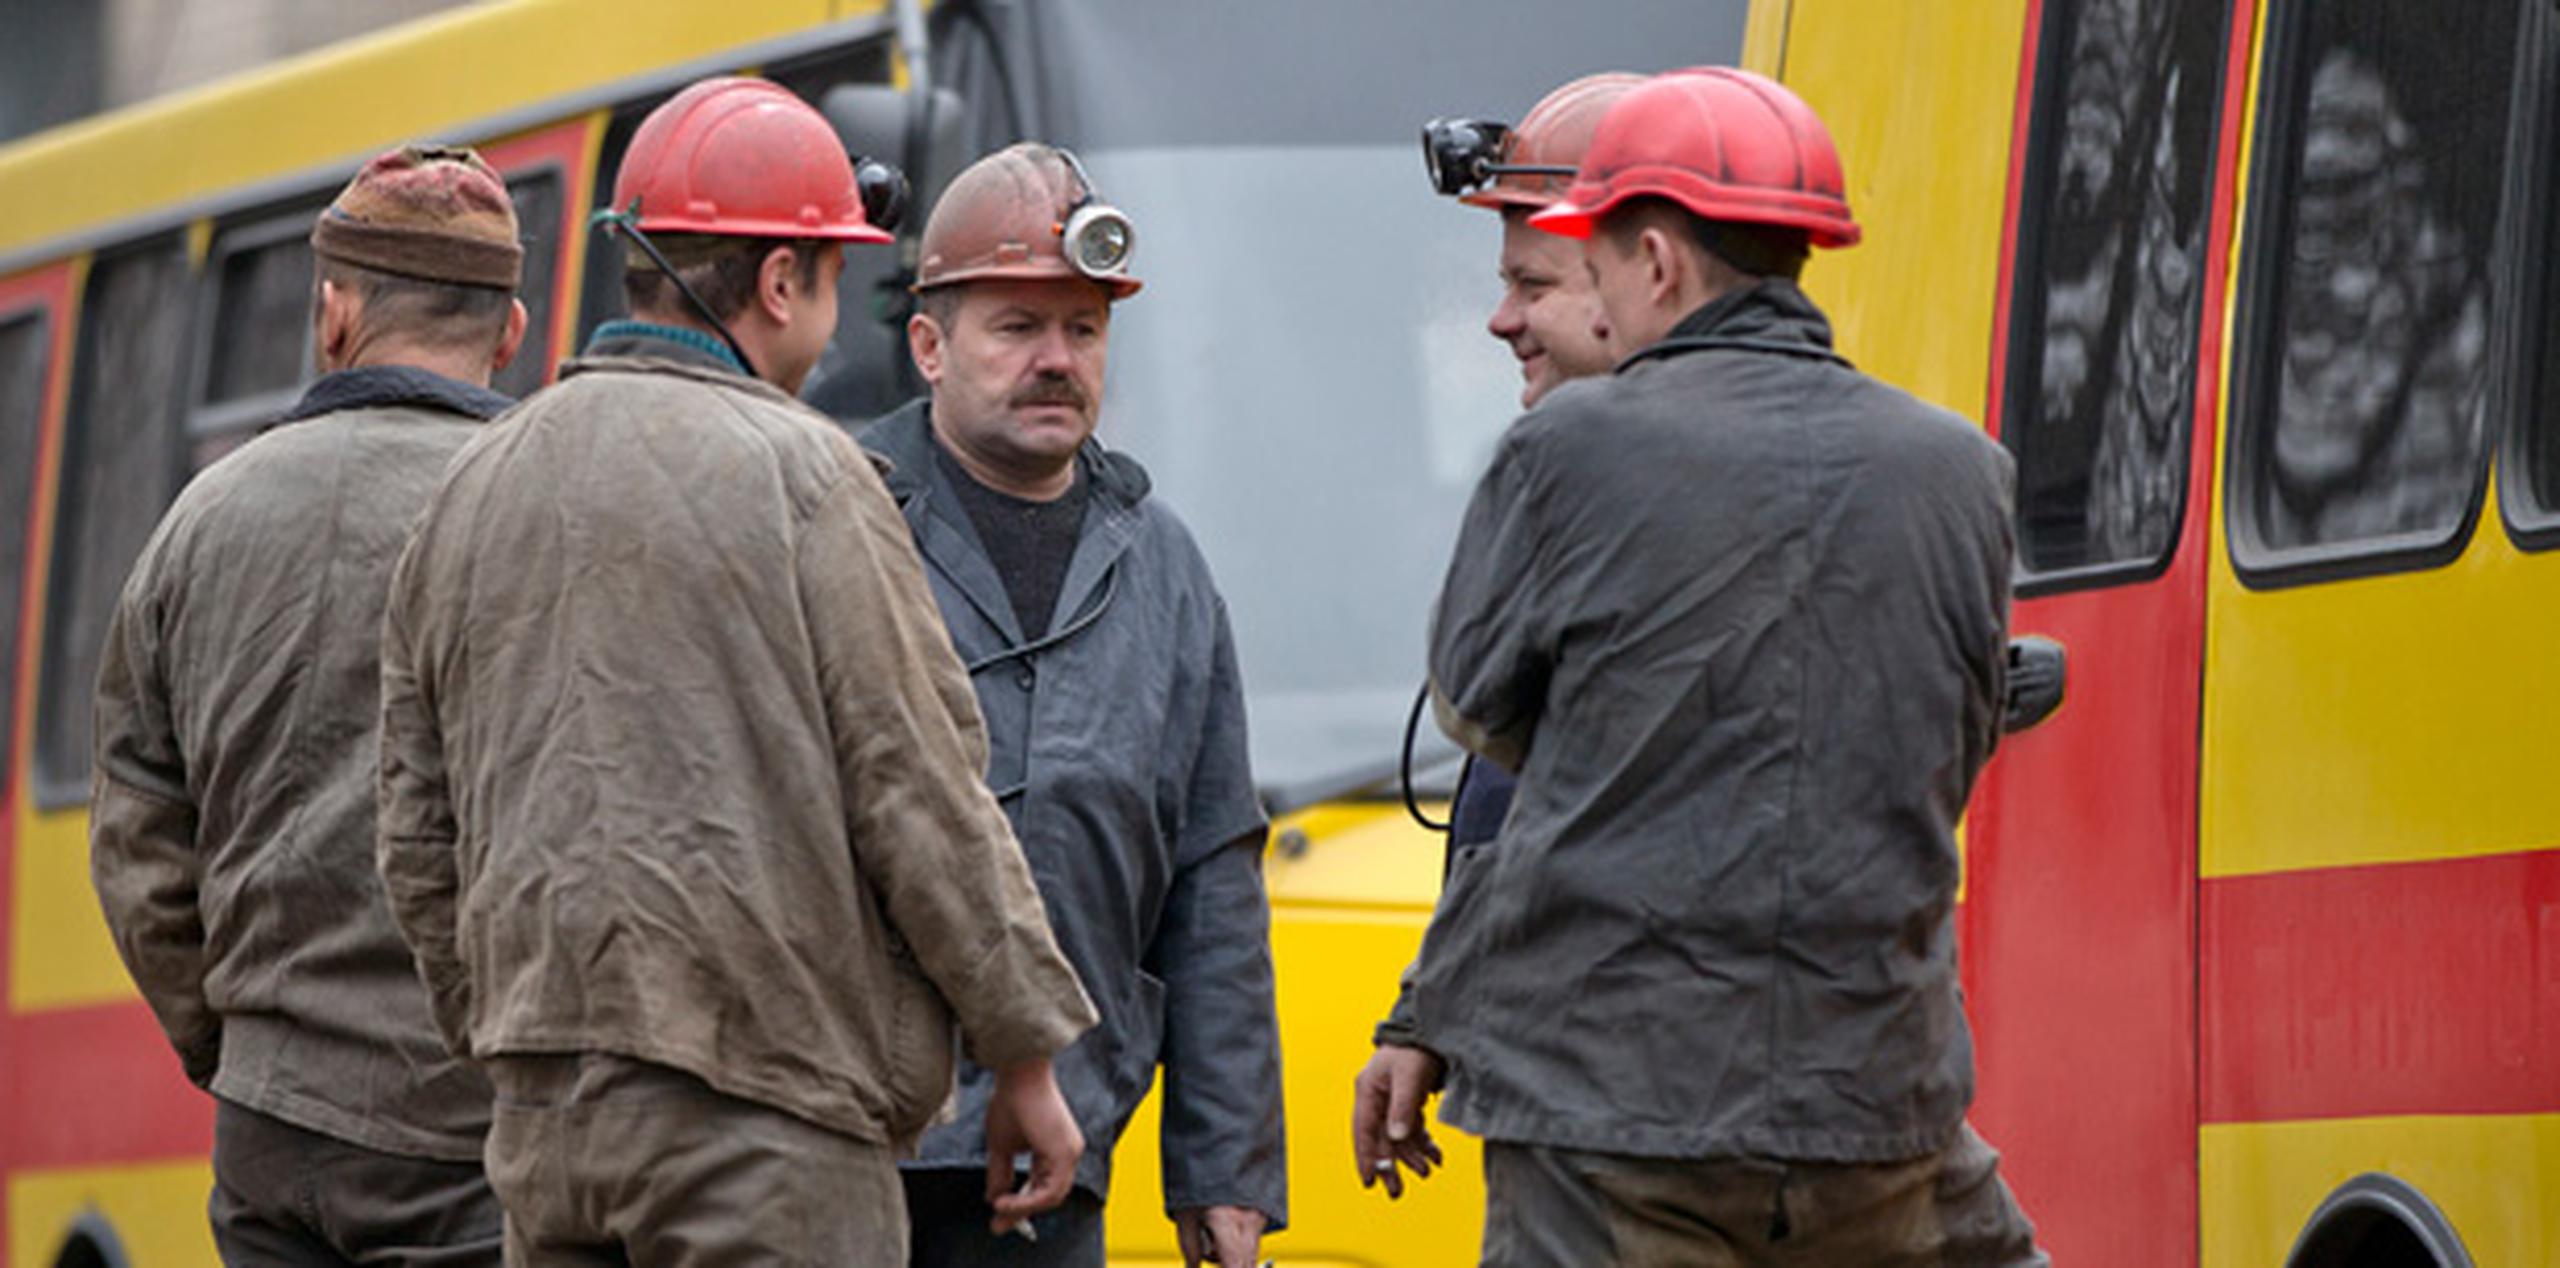 Las tareas de rescate seguían en marcha y al menos 157 trabajadores habían sido evacuados de la mina. (AP)